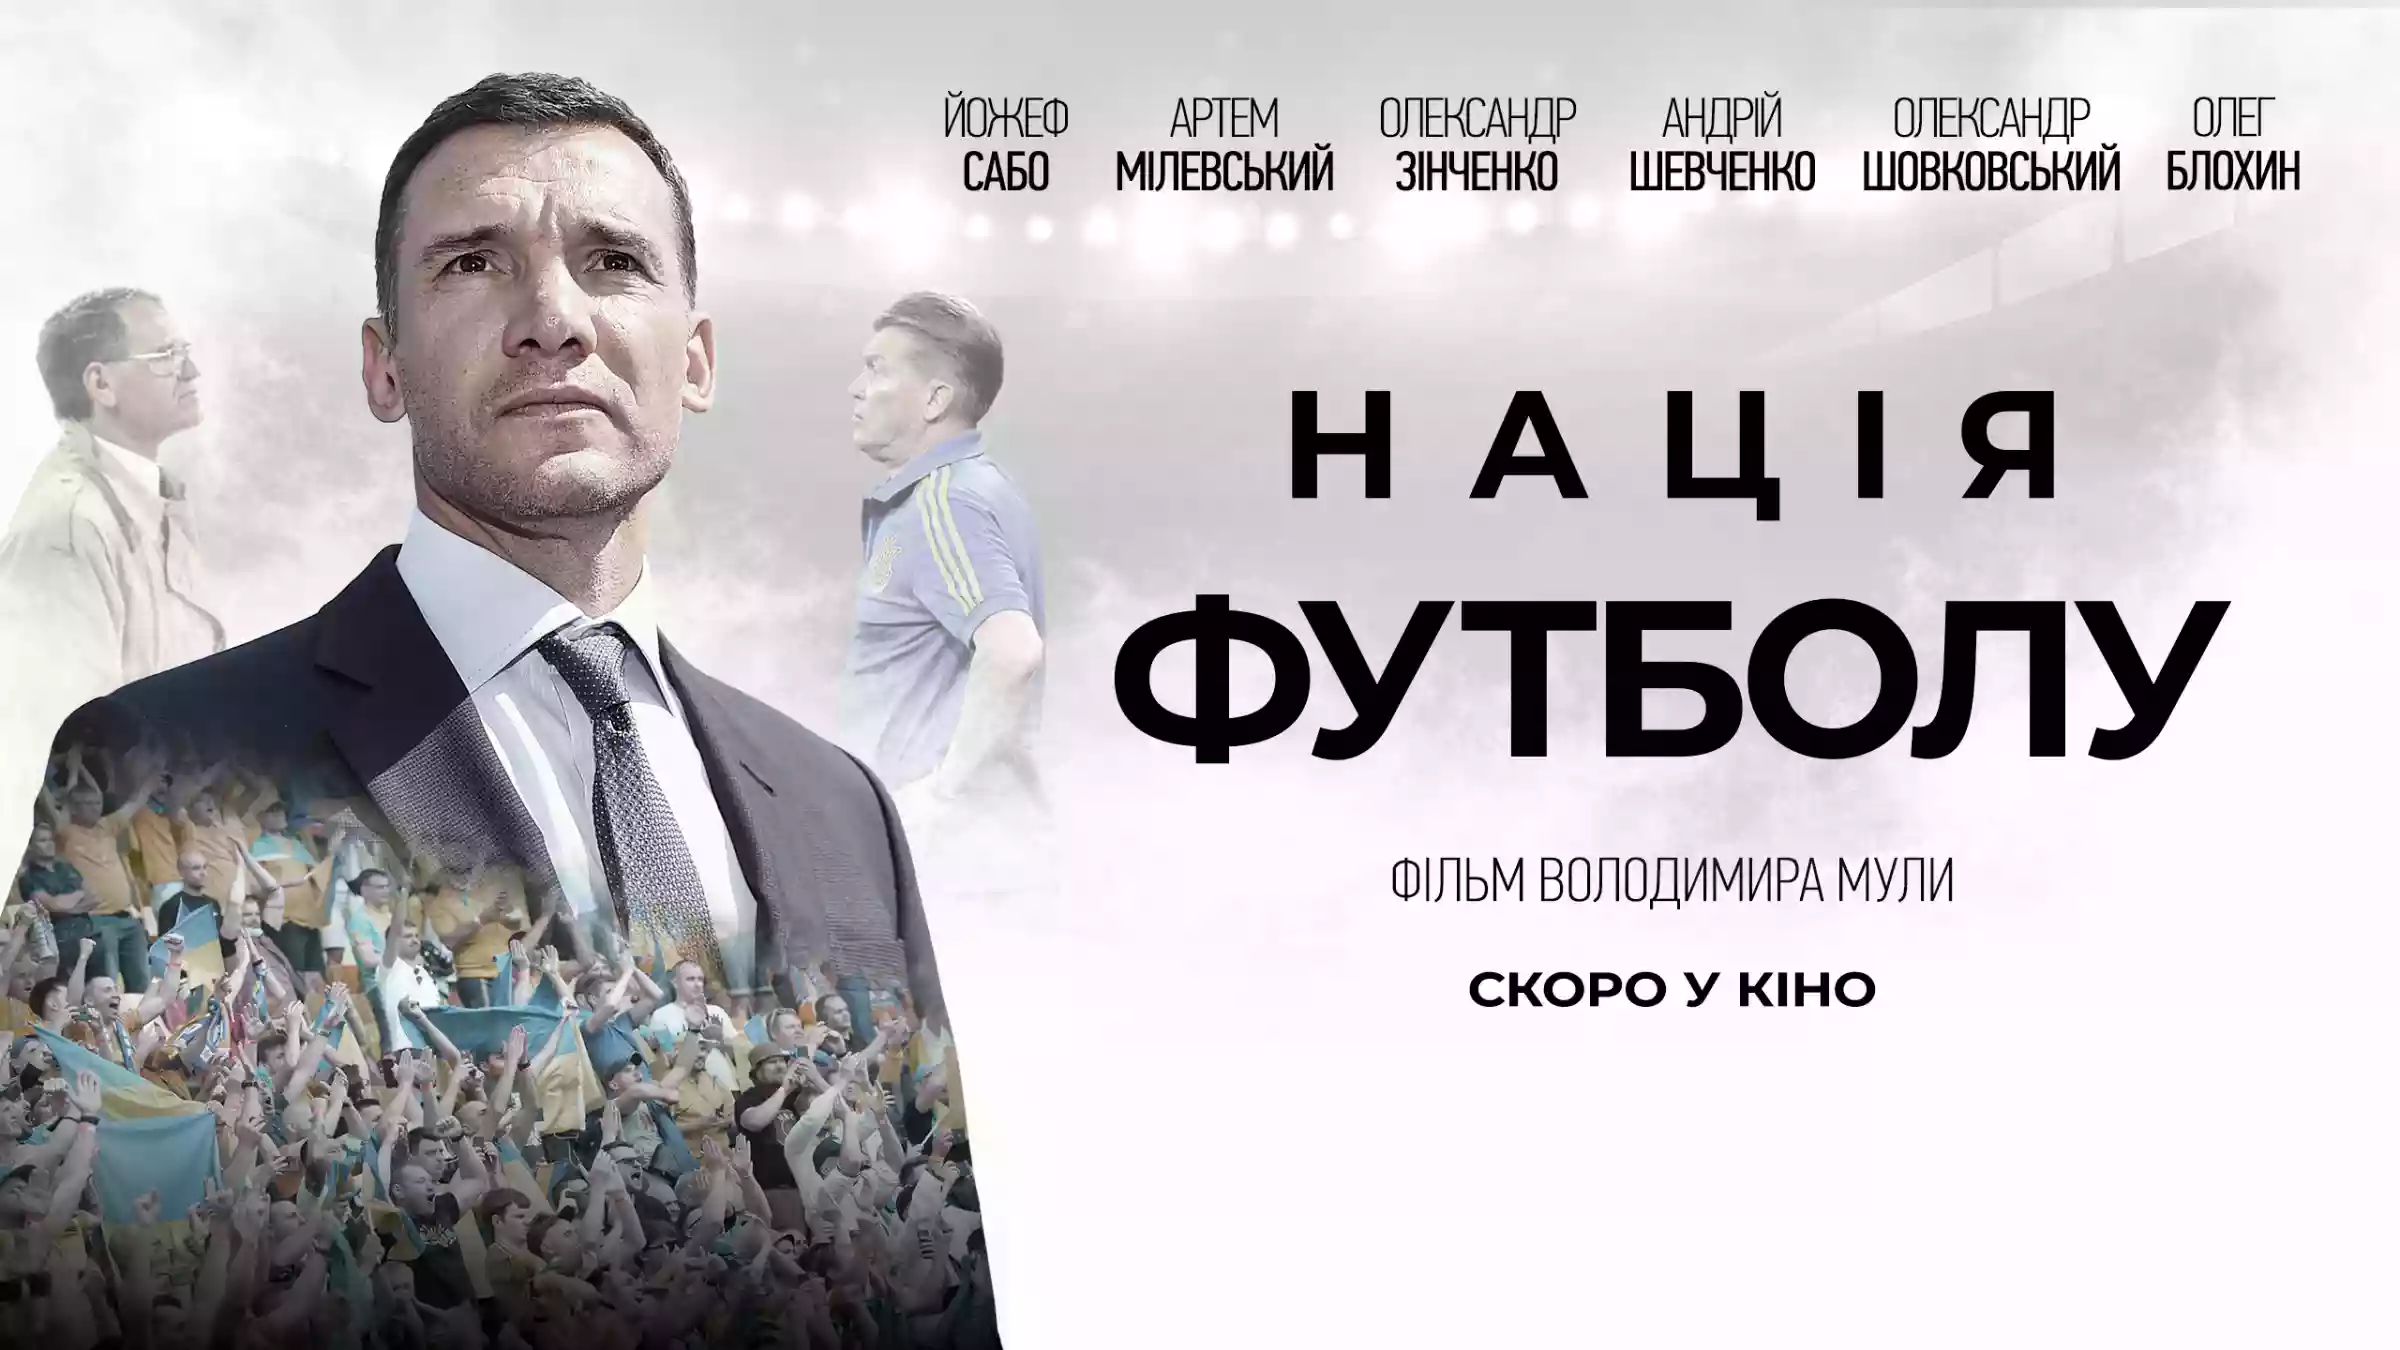 Документальна стрічка «Нація футболу» із зірками української збірної вийде в прокат восени